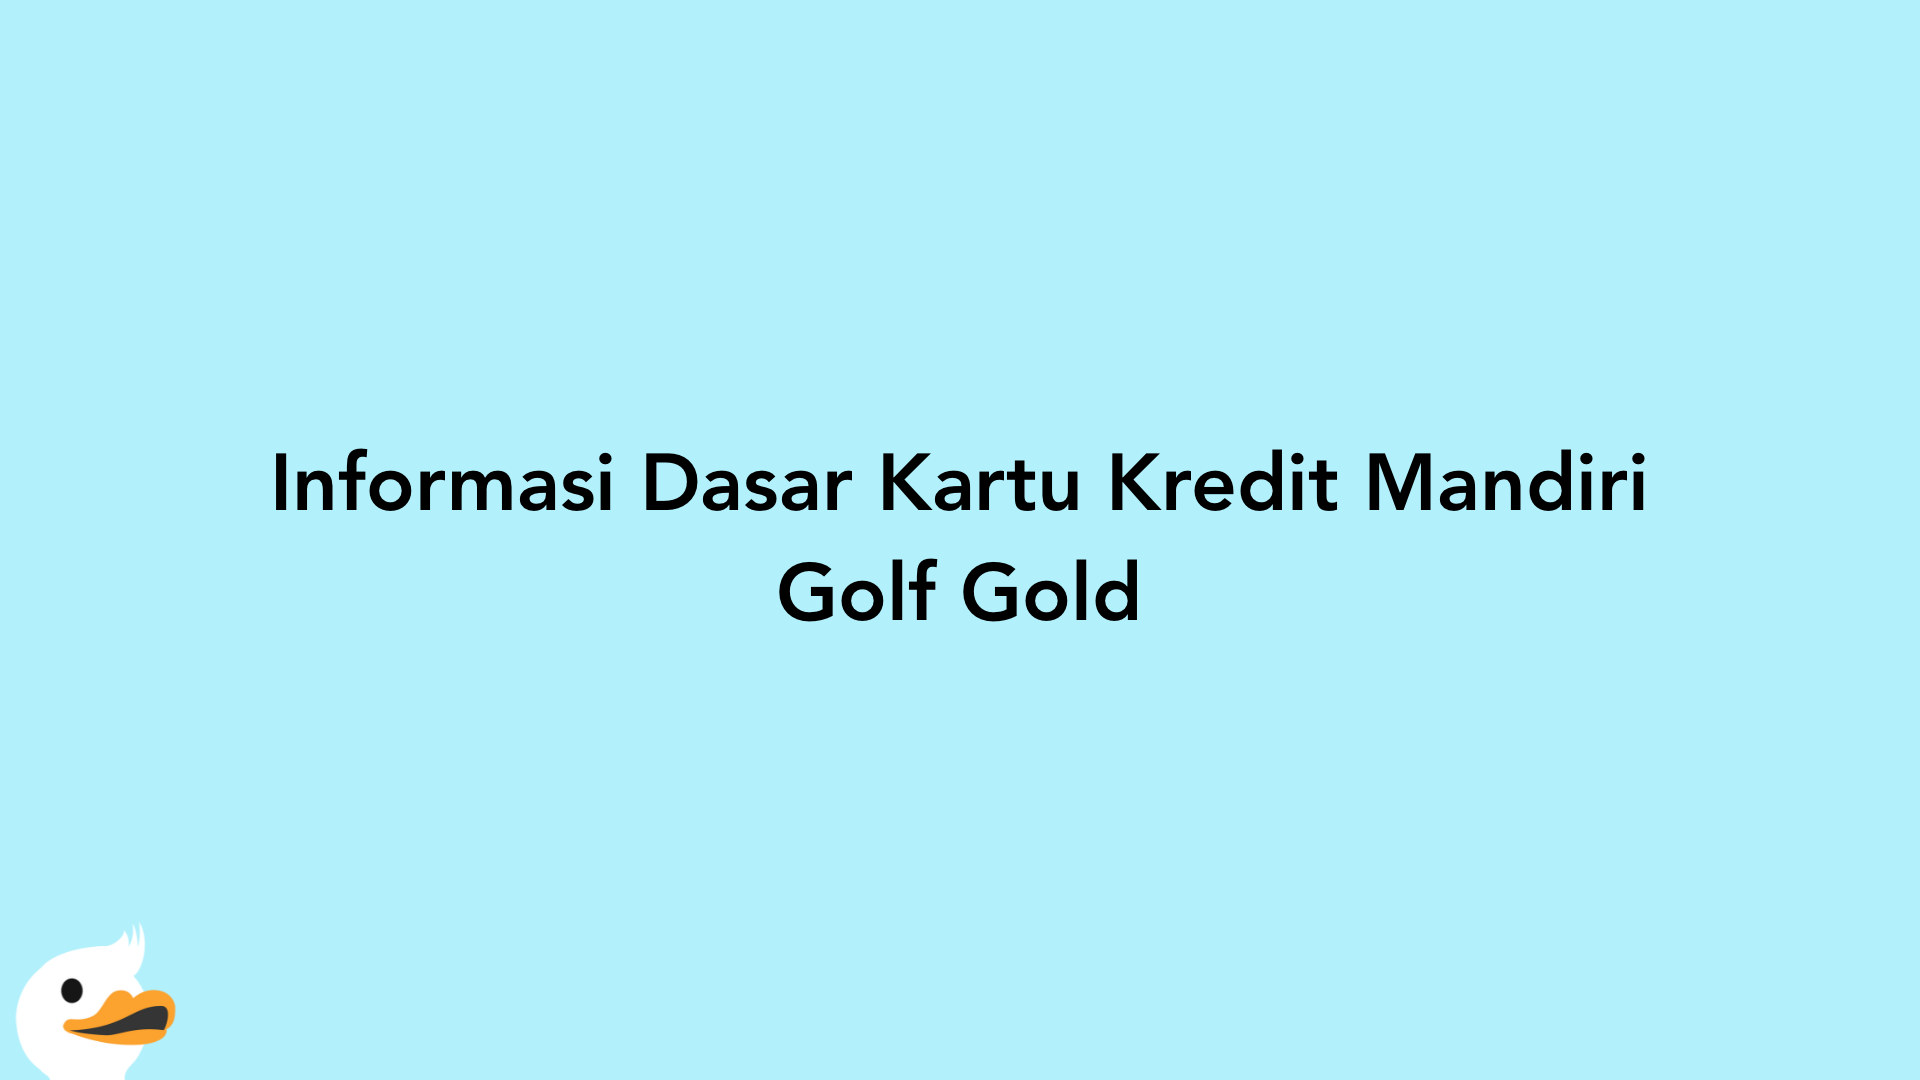 Informasi Dasar Kartu Kredit Mandiri Golf Gold